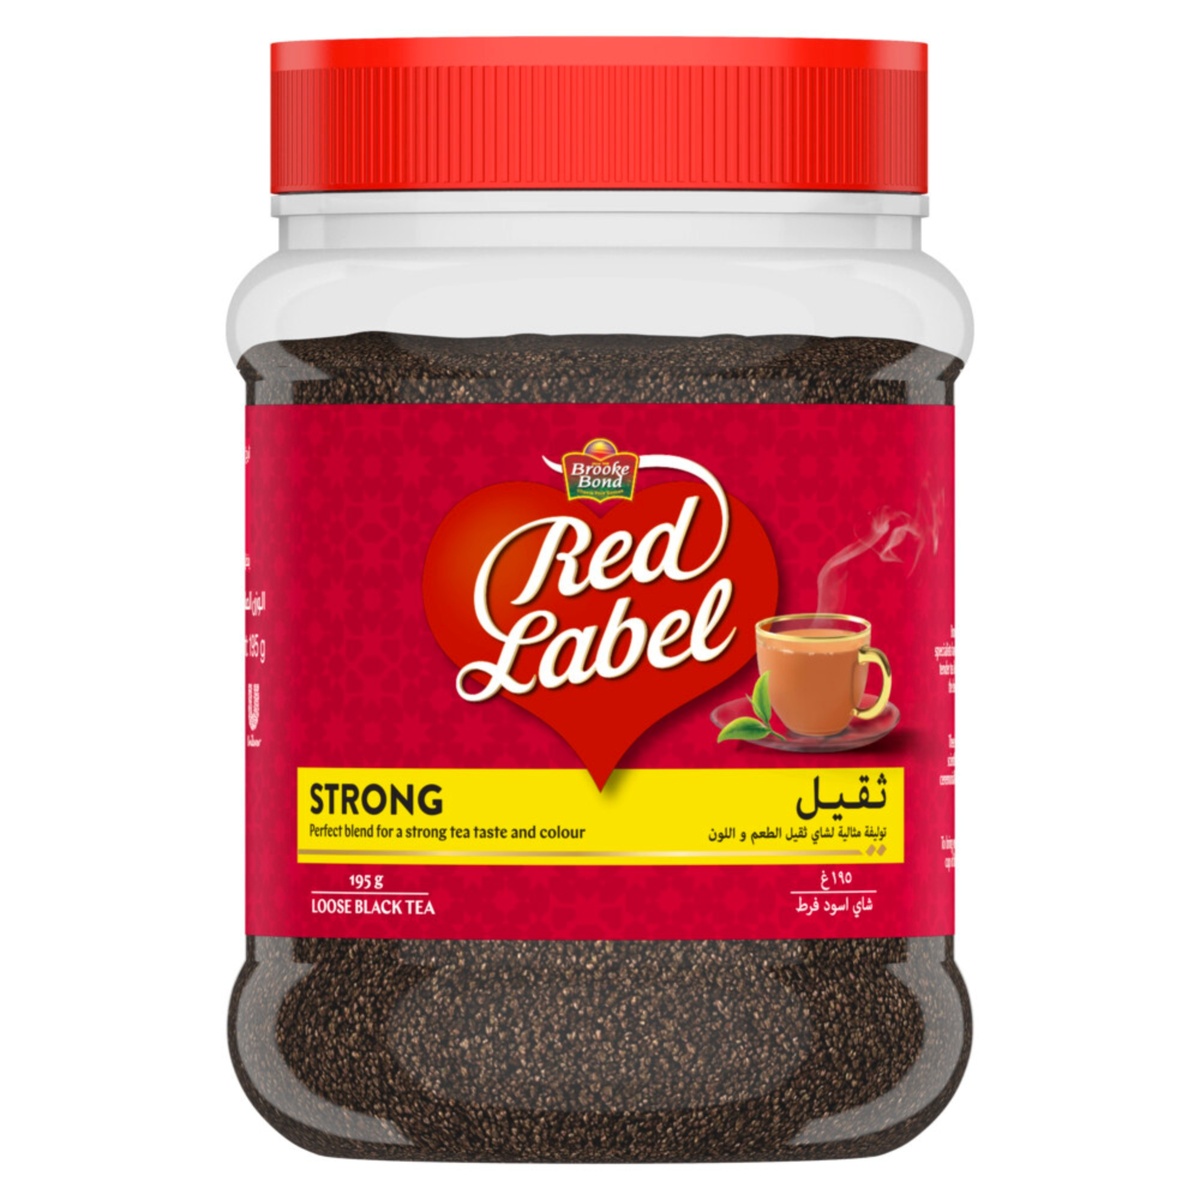 Brooke Bond Red Label Black Loose Tea 195g